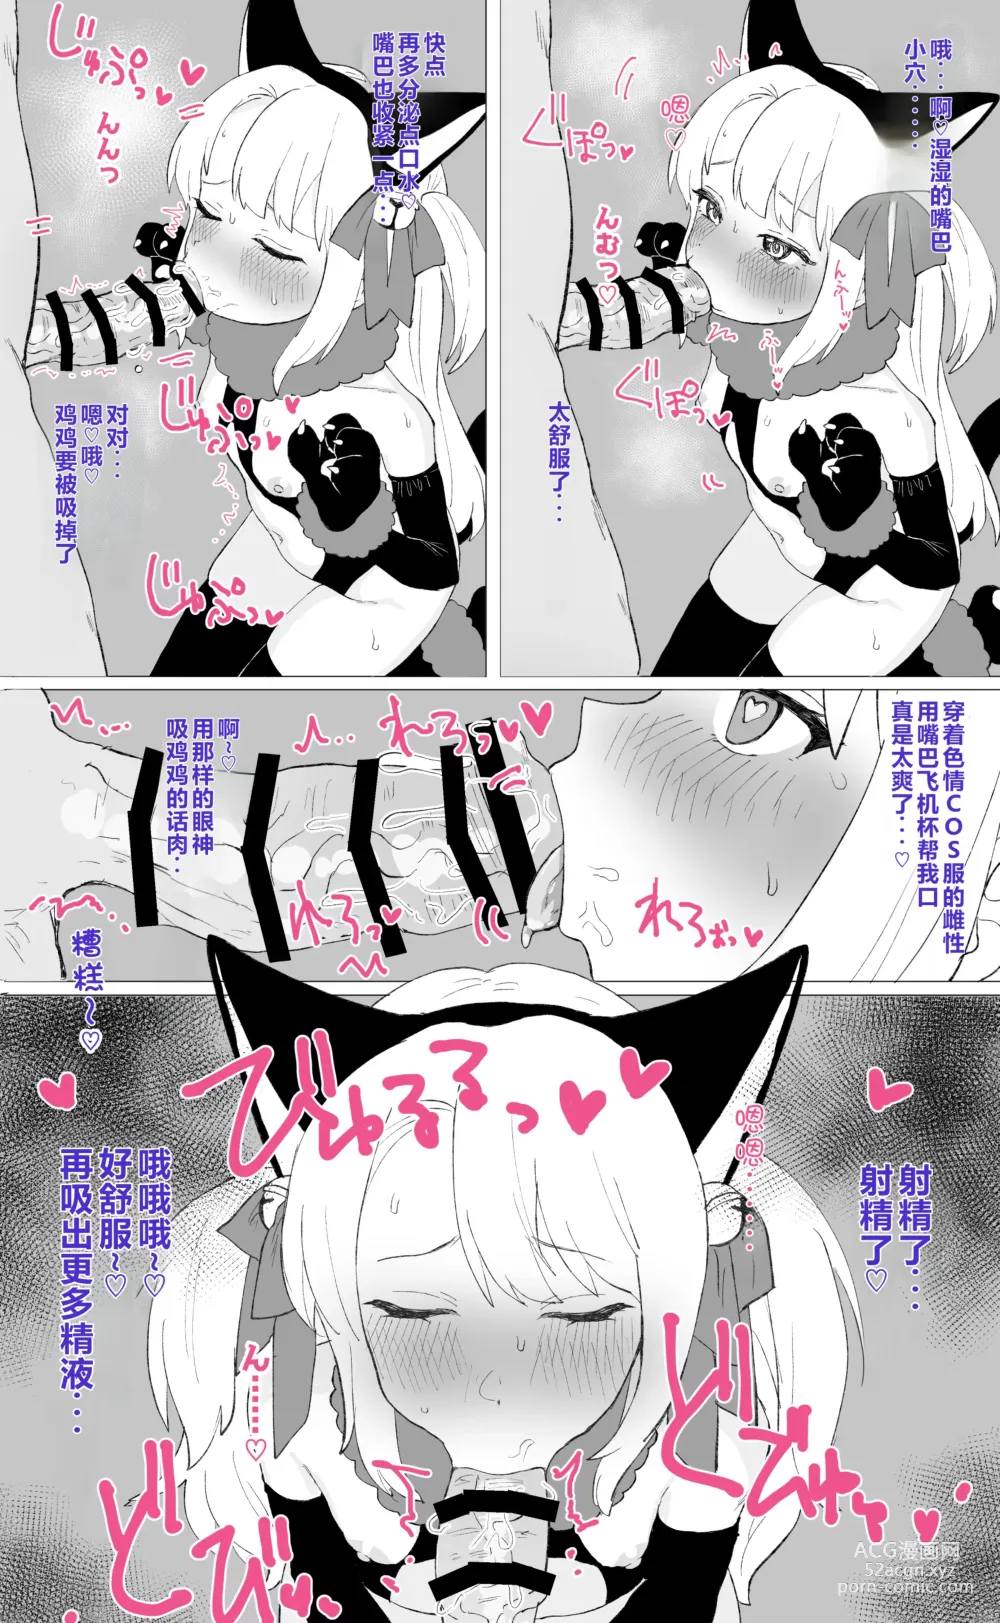 Page 4 of doujinshi Hitokuchi Echi Manga Tsumeawase